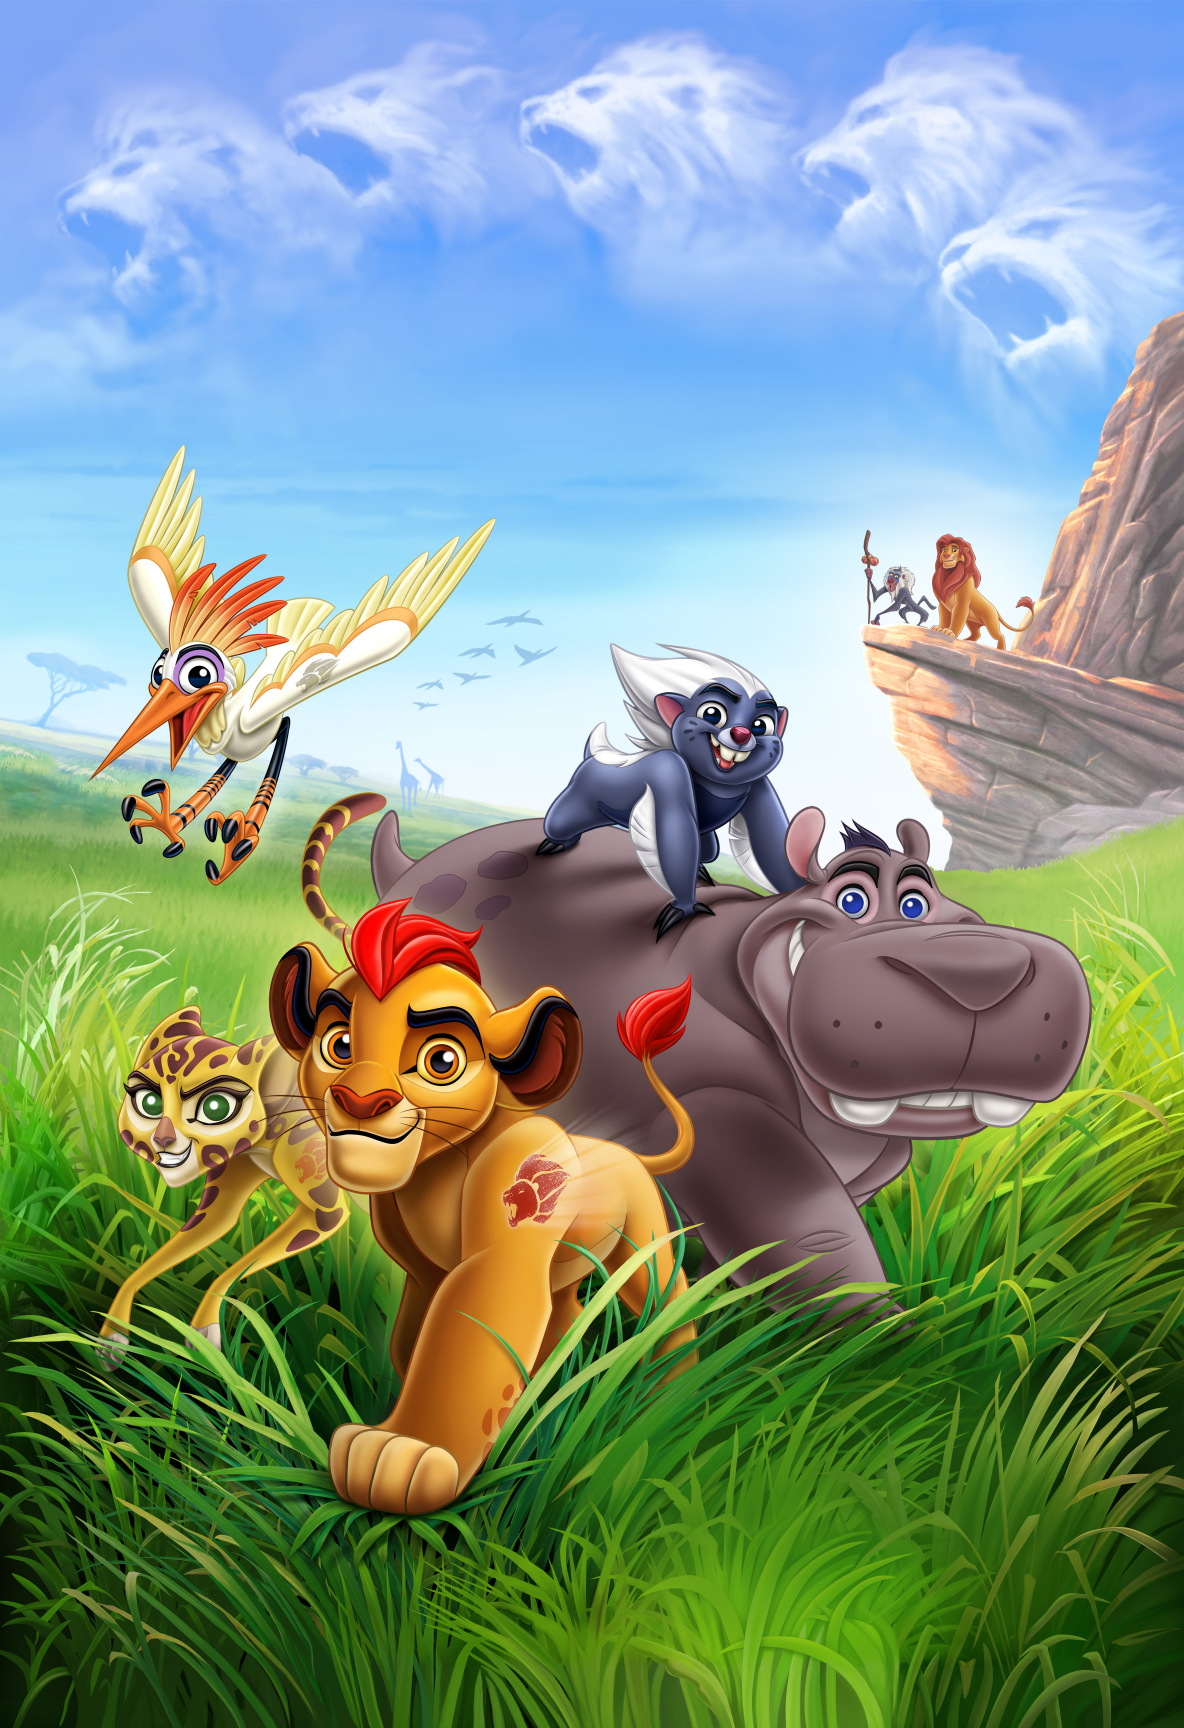 A Guarda Do Leao Disney Junior Estreia Nova Série «A Guarda Do Leão»